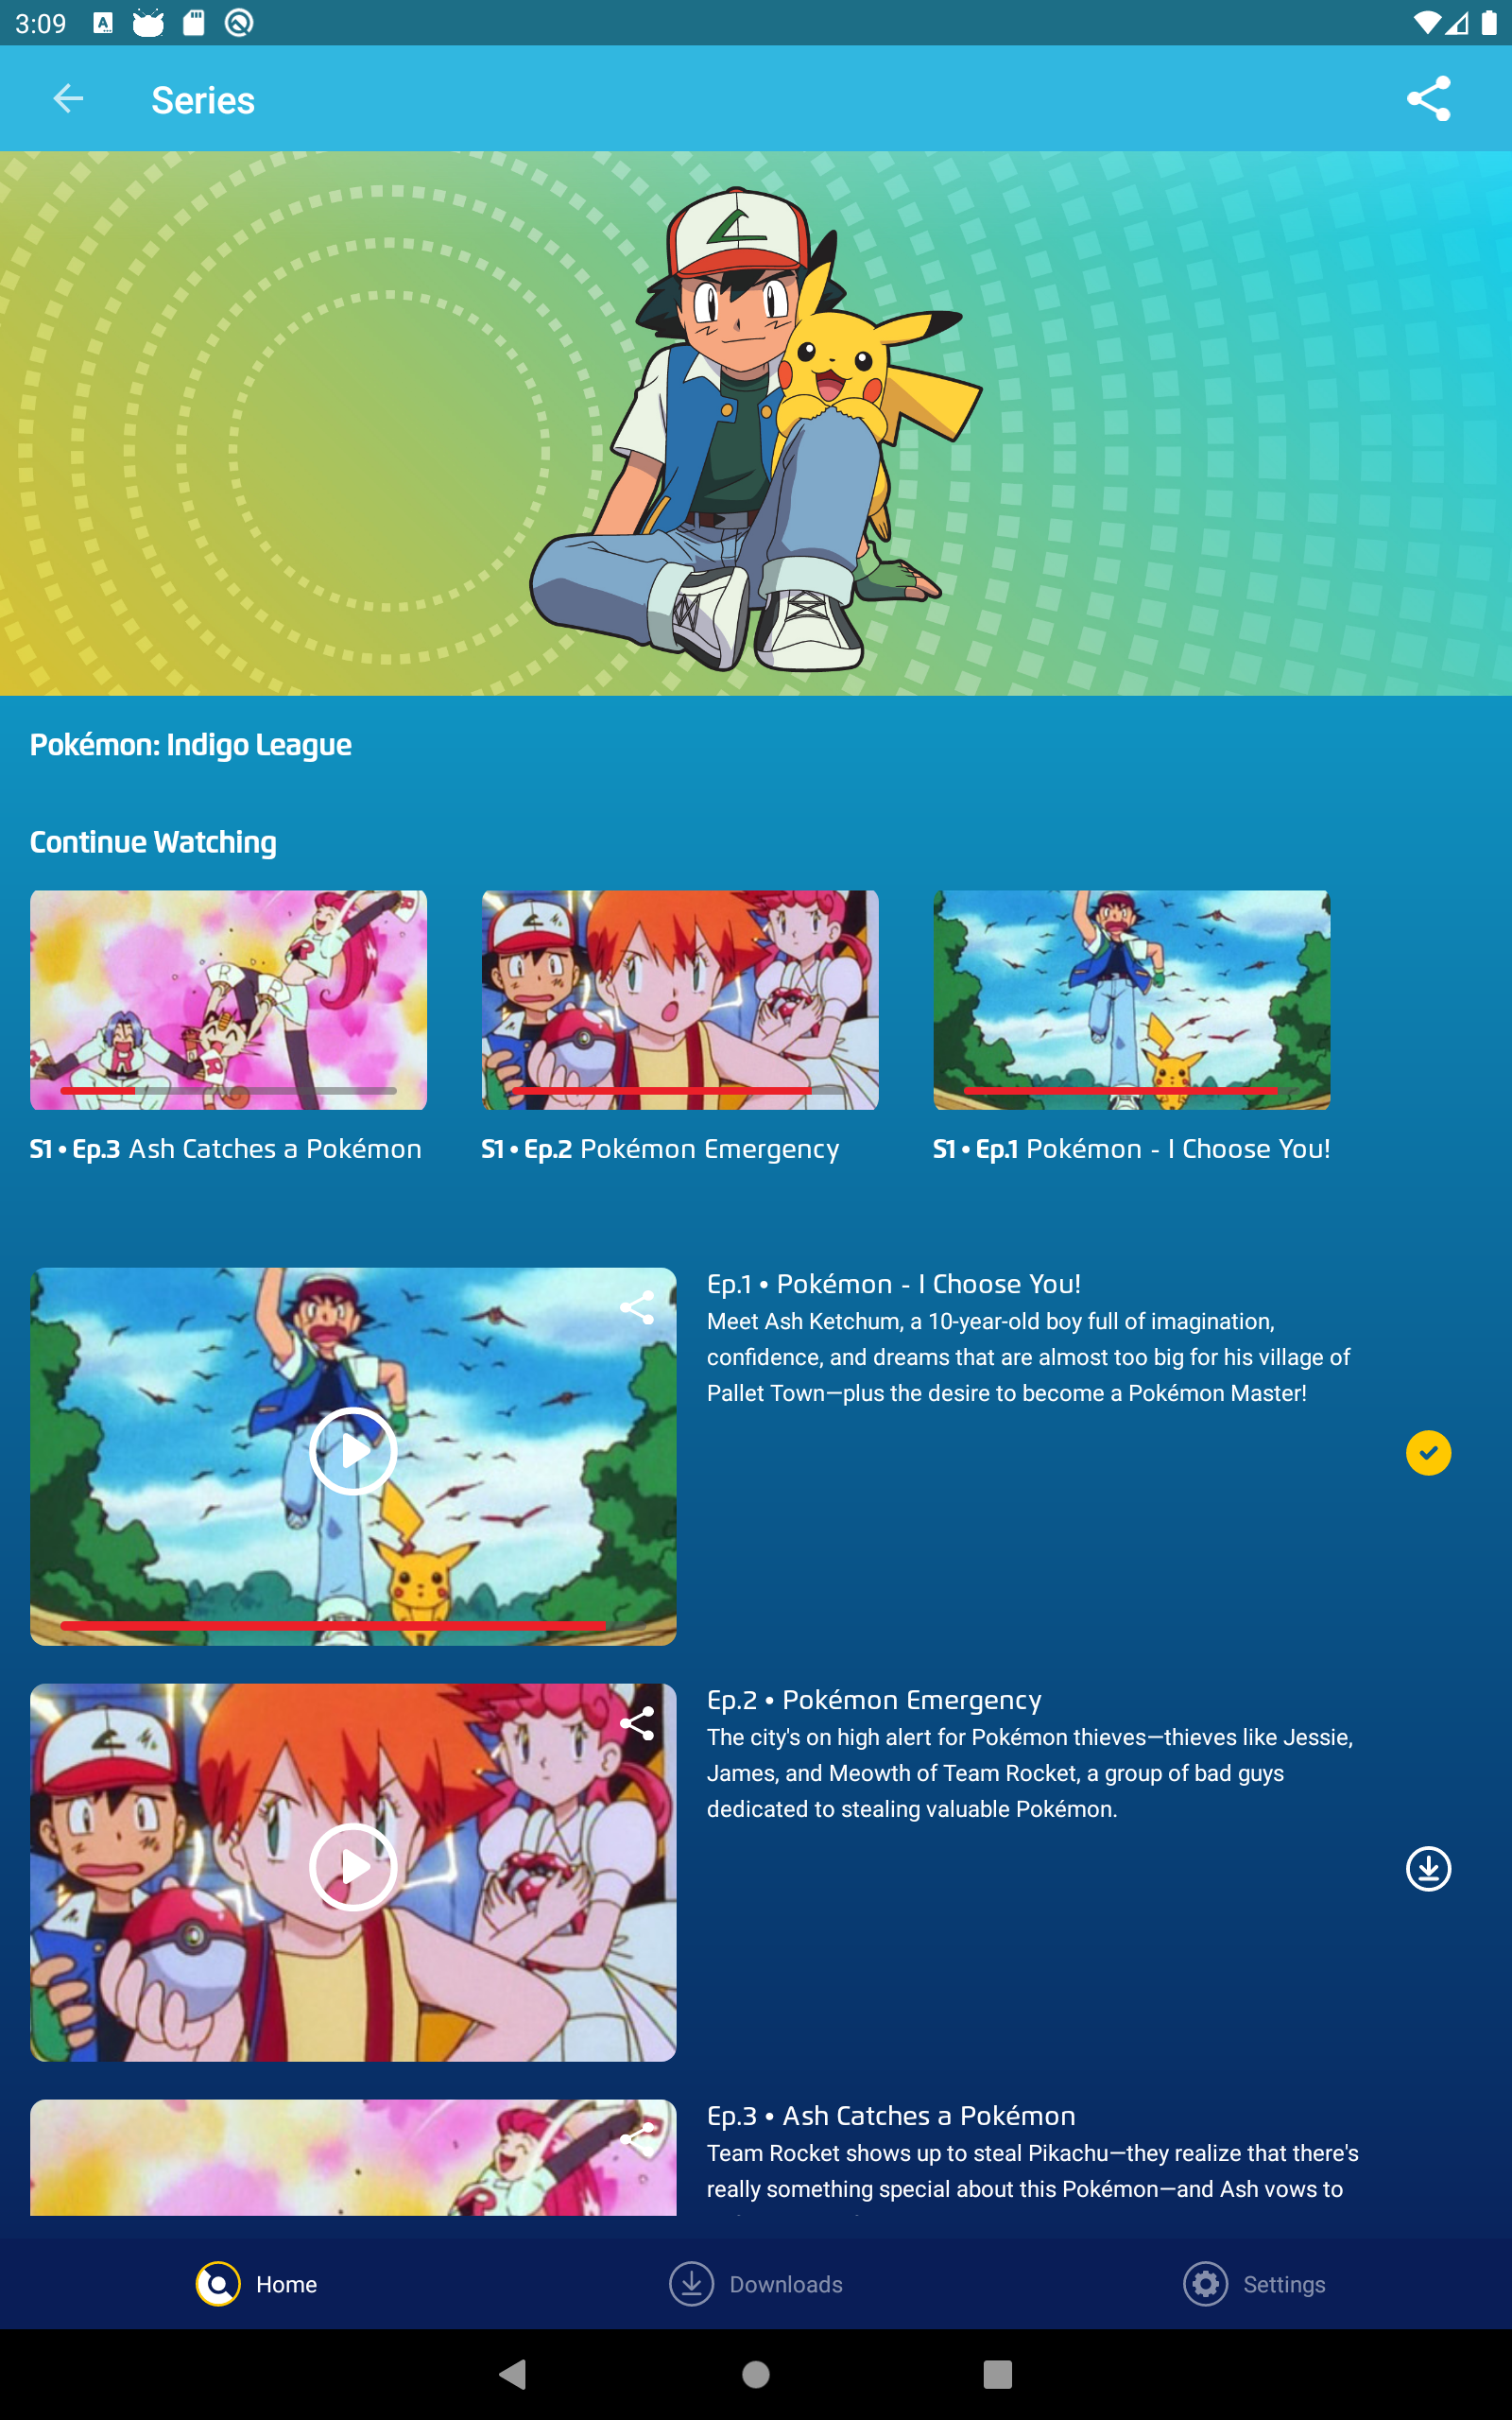 Pokémon TV - Microsoft Apps